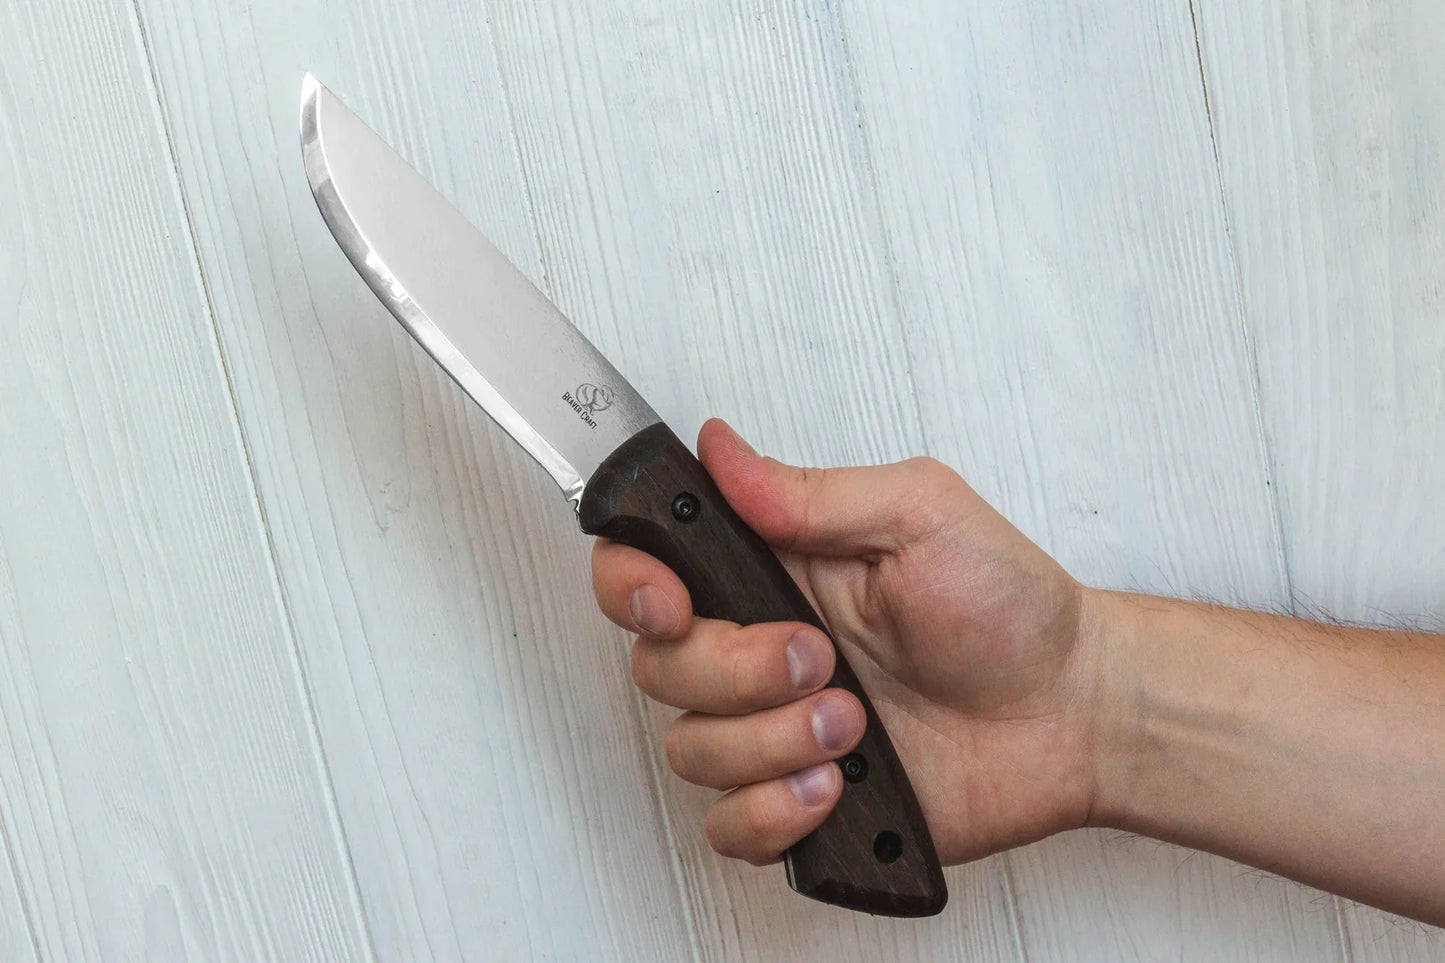 BSH1 Carbon Steel Bushcraft Knife Walnut Handle with Leather Sheath